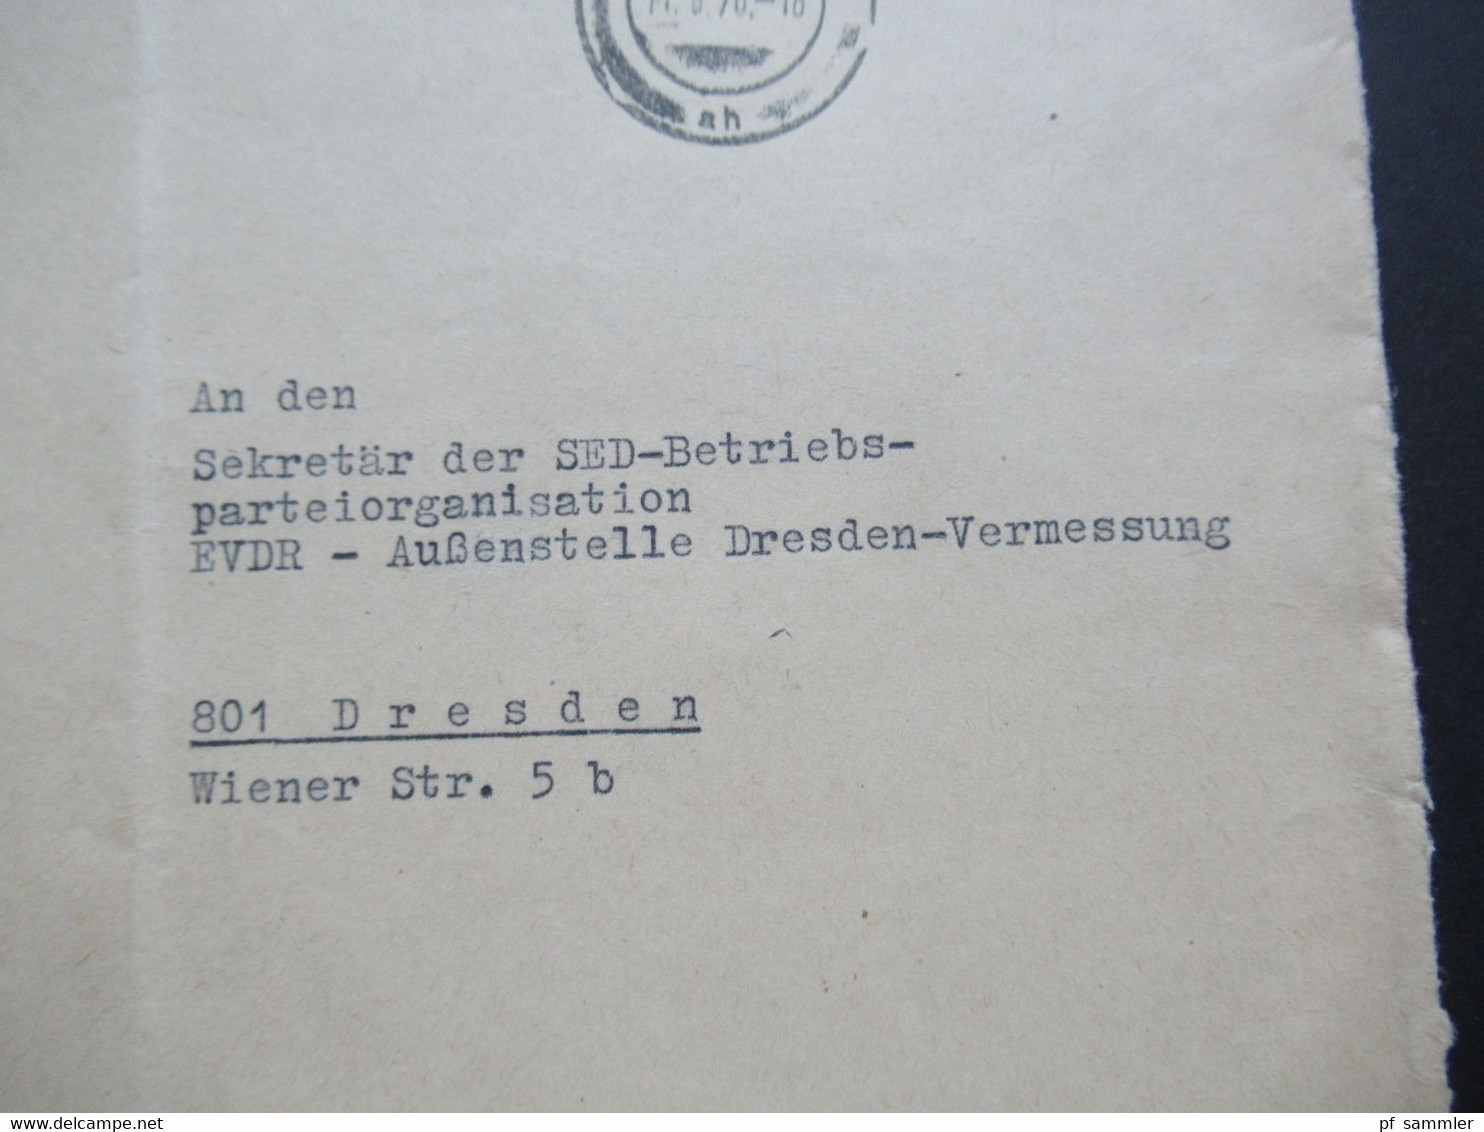 DDR 1970 ZKD Deutsche Reichsbahn Reichsbahnbaudirektion Berlin Roter Stempel Aushändigung Als Gewöhnliche Postsendung - Andere & Zonder Classificatie